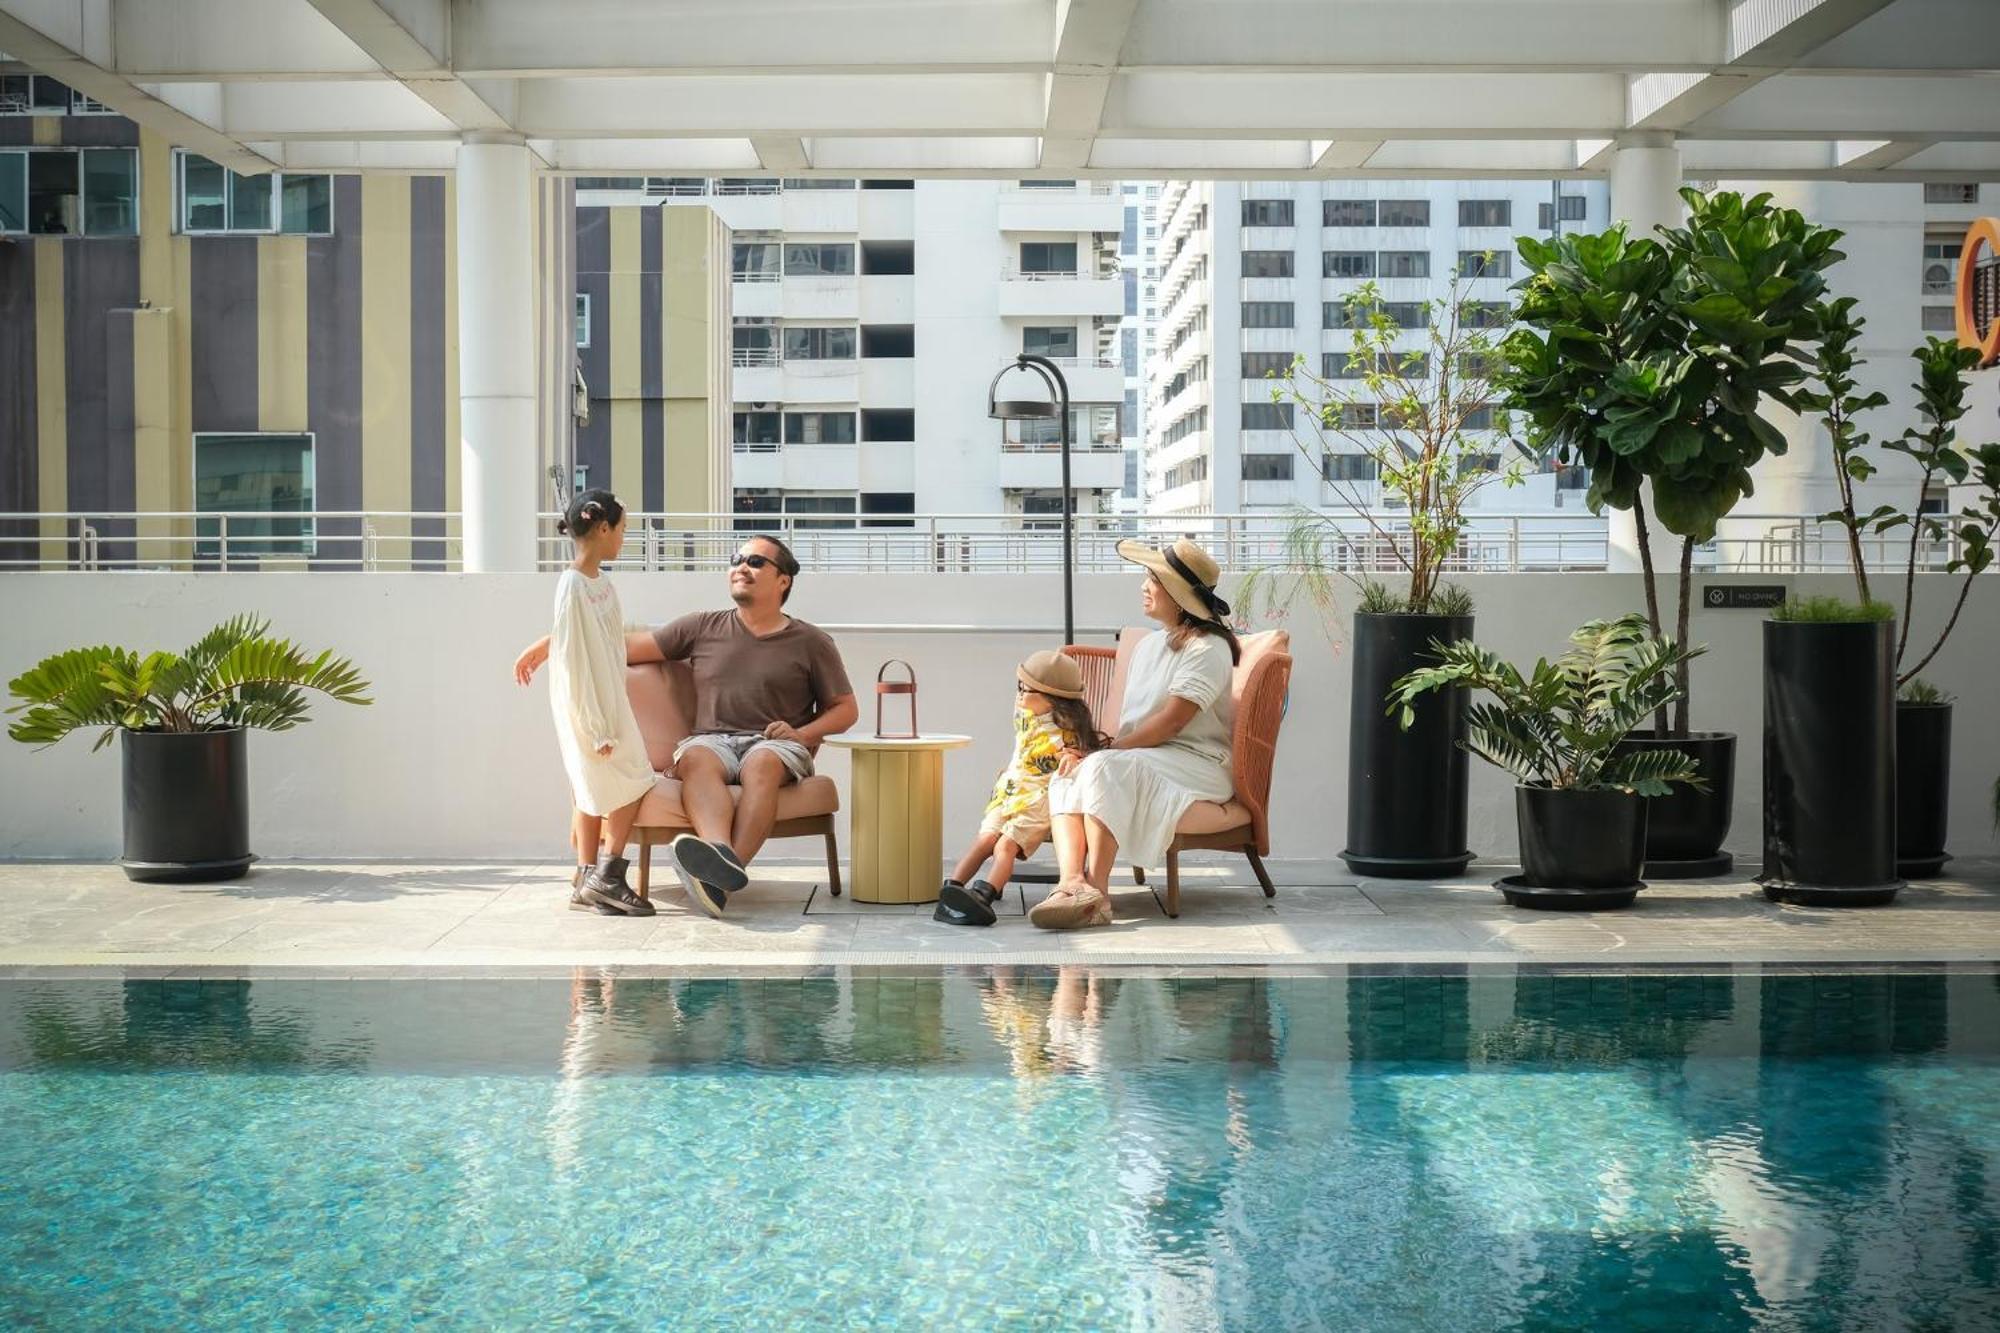 Parkroyal Suites Bangkok - Sha Plus Certified Eksteriør billede